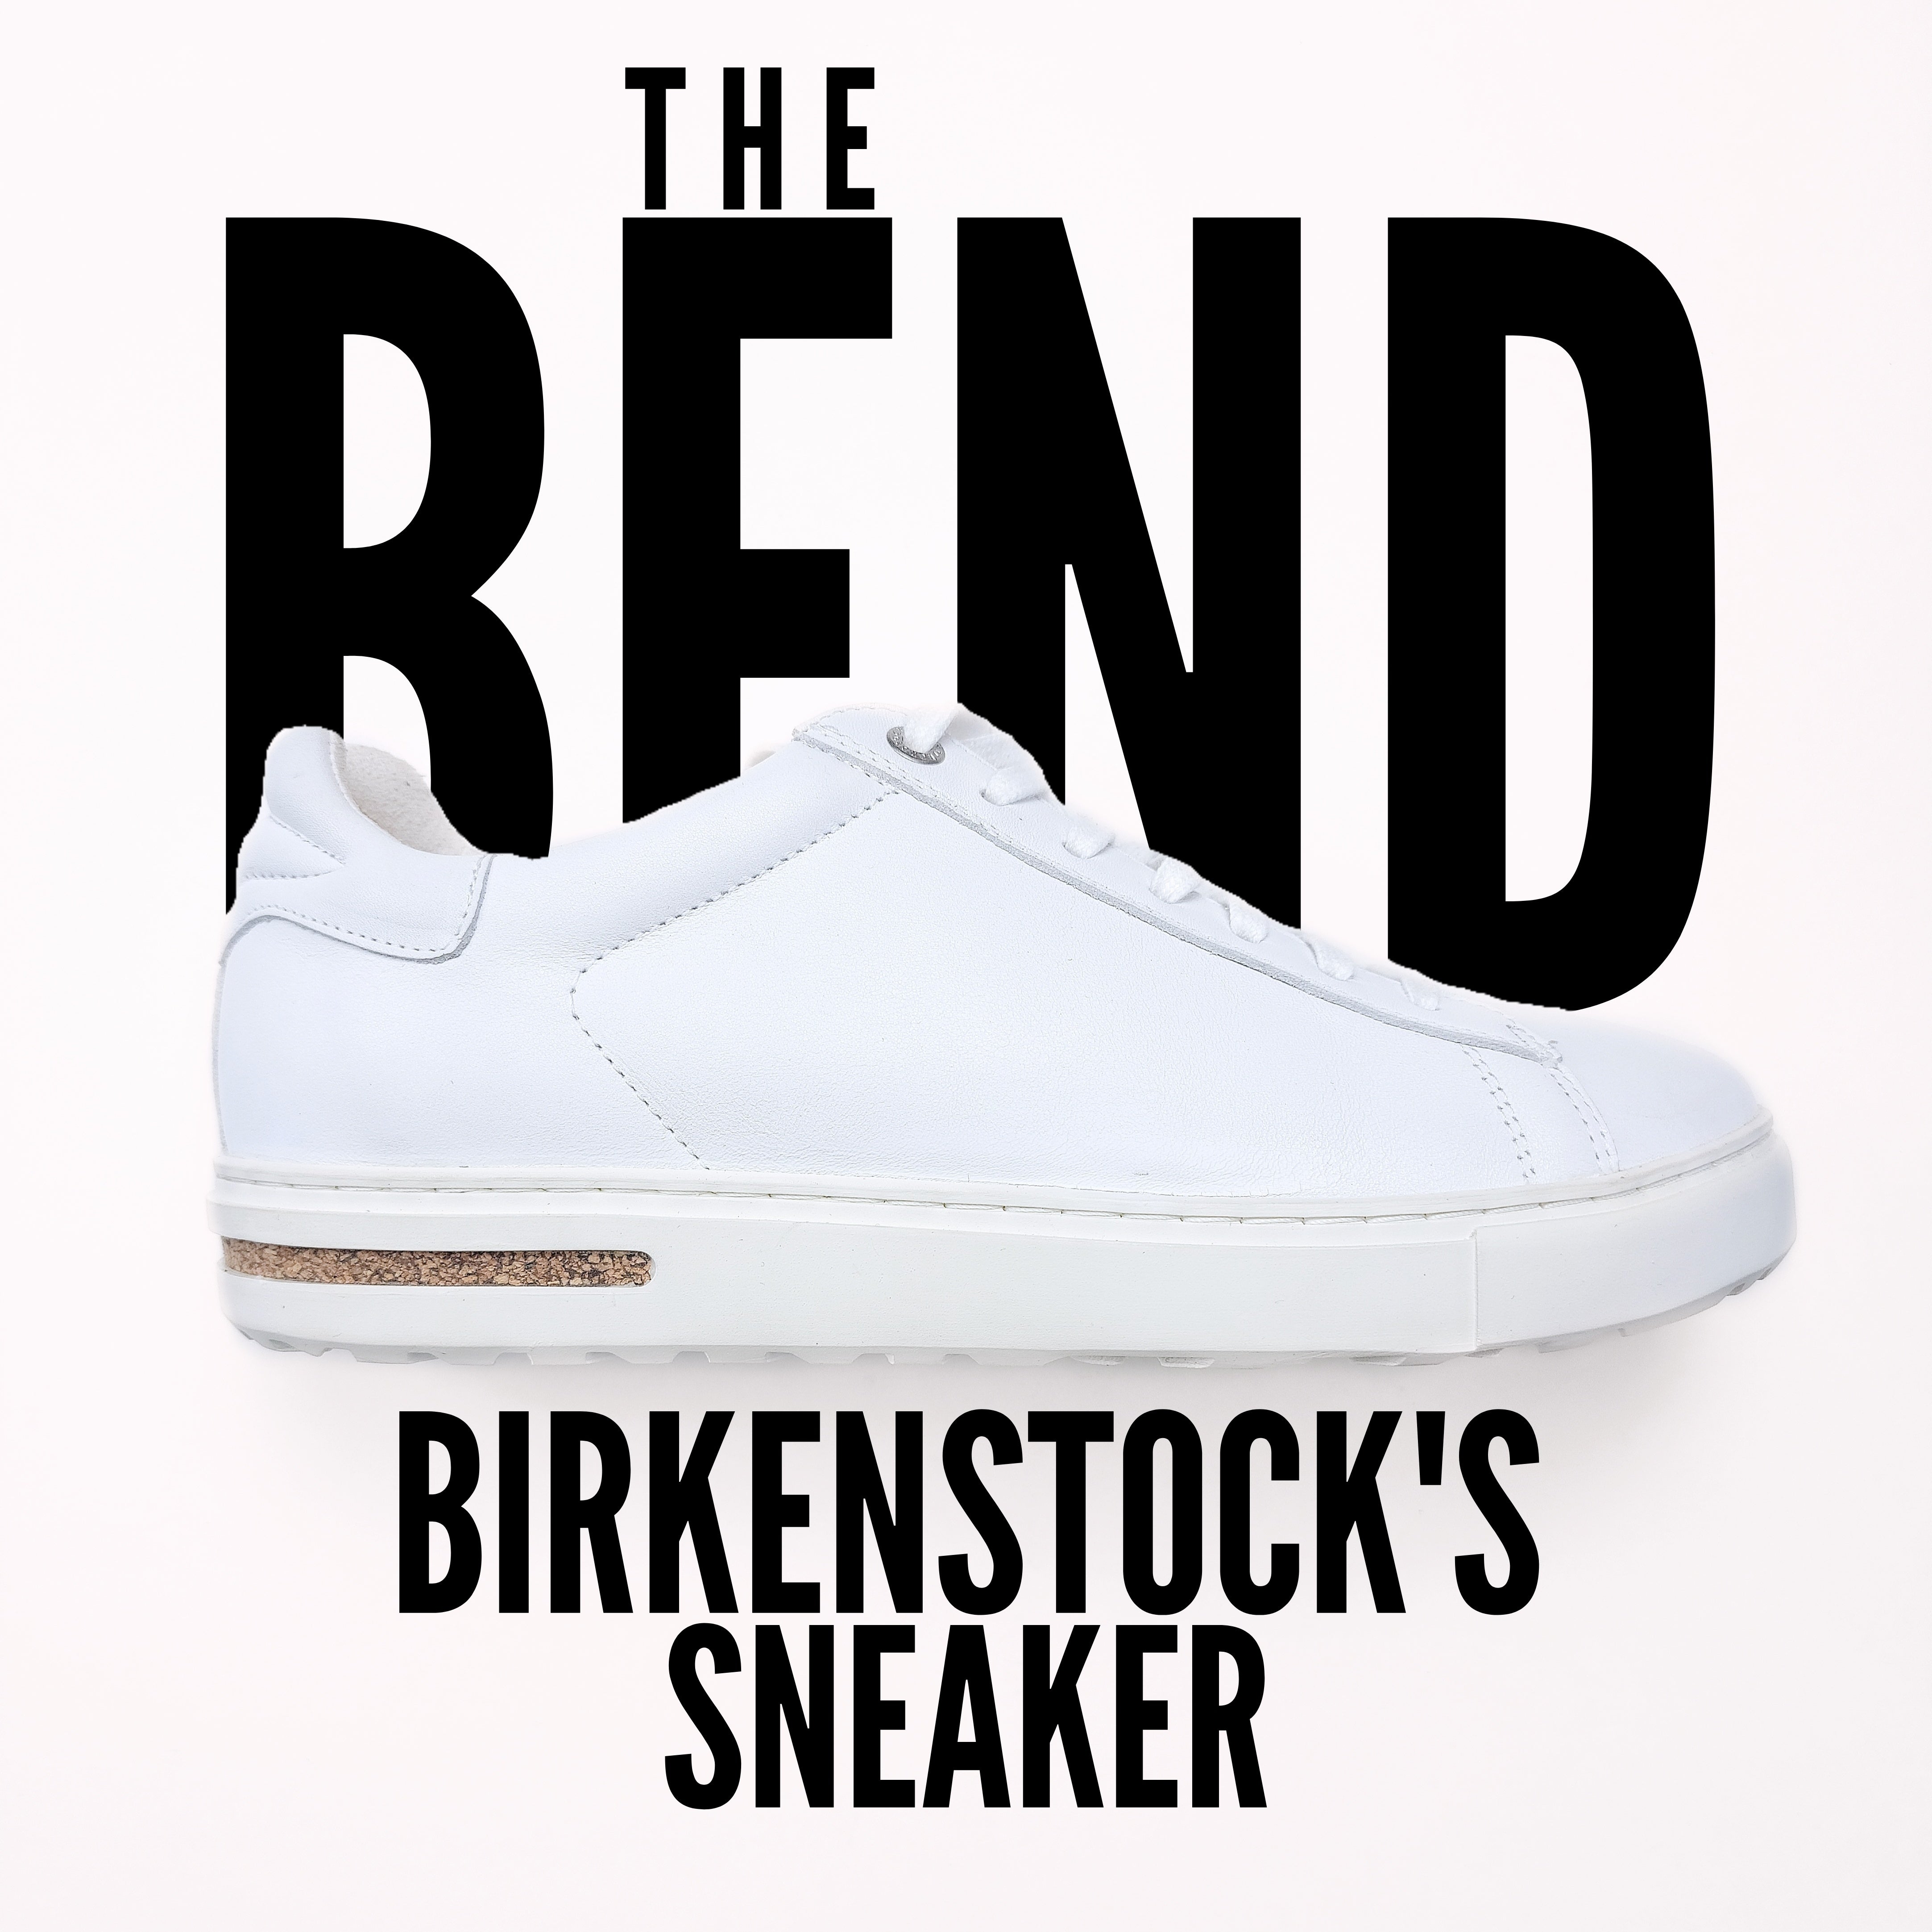 Birkenstock's Sneaker, the Bend!